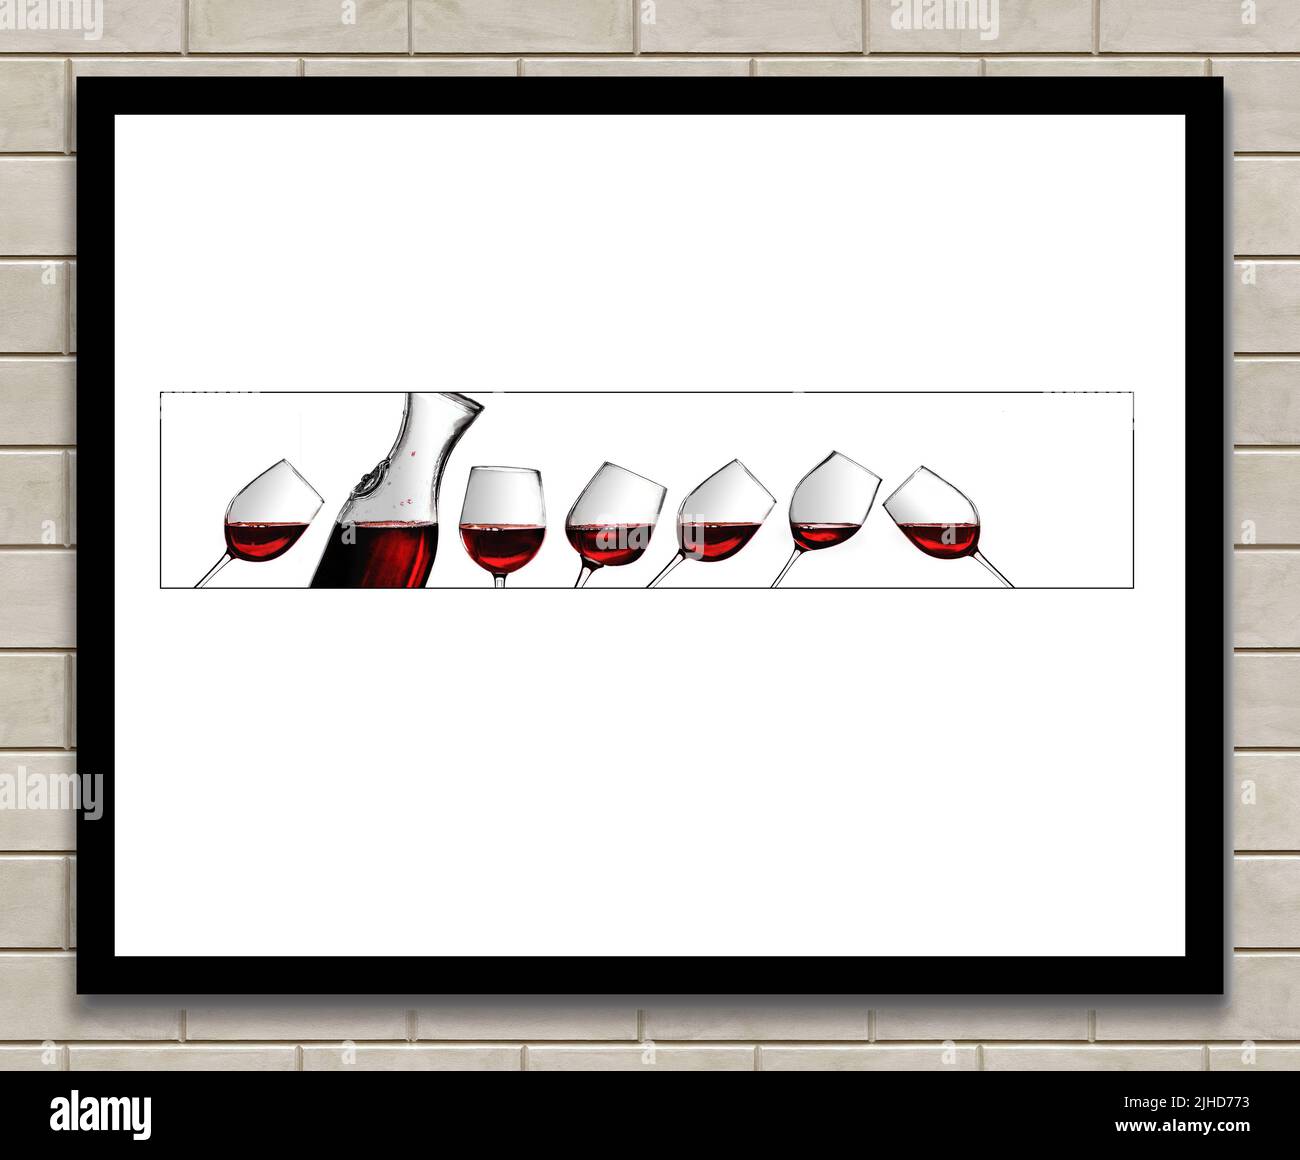 En este arte se ve una obra de arte del vino en los vasos con puntas angulares, pero mantener un nivel de vino plano en cada vaso está enmarcado en una pared de ladrillo Foto de stock